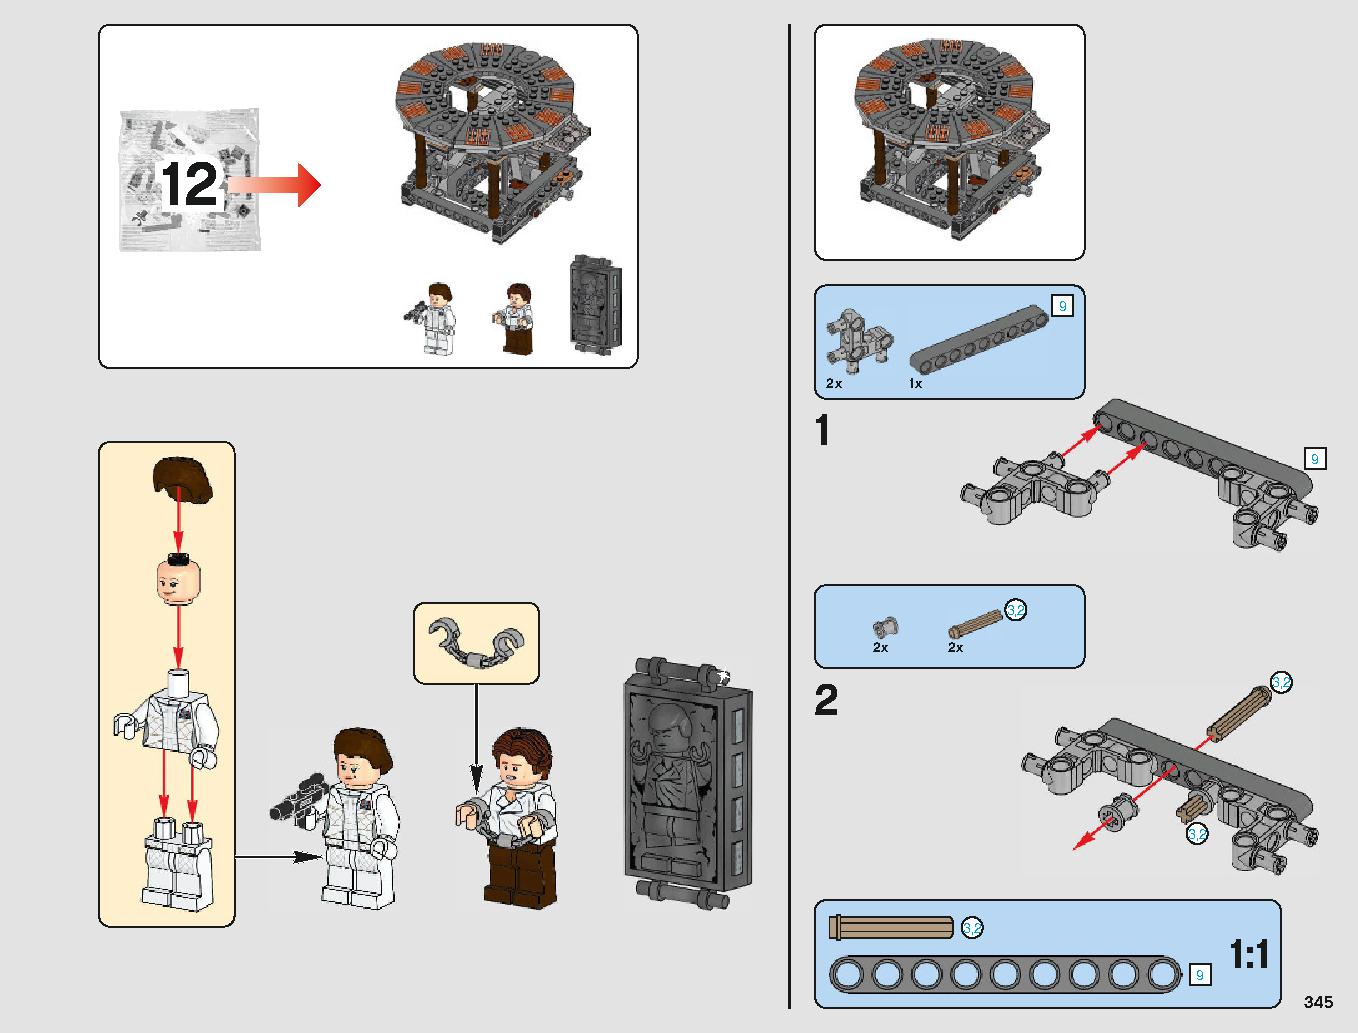 クラウド・シティ 75222 レゴの商品情報 レゴの説明書・組立方法 345 page